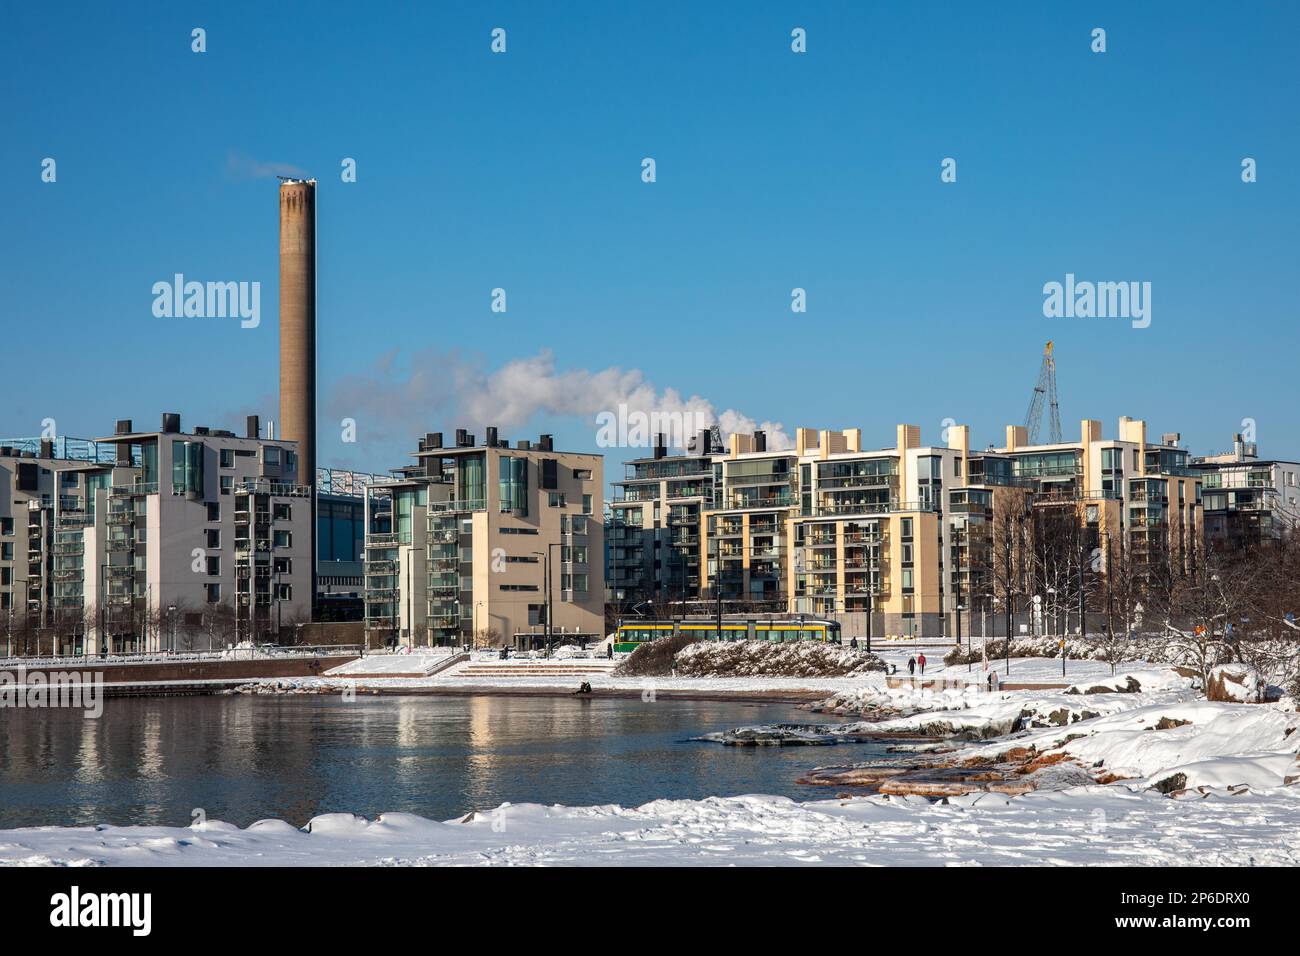 La plage d'Eiran ranta ou d'Eiranranta a été enneigée avec des bâtiments résidentiels modernes d'Hernesaari en arrière-plan, lors d'une journée d'hiver ensoleillée à Helsinki, en Finlande Banque D'Images